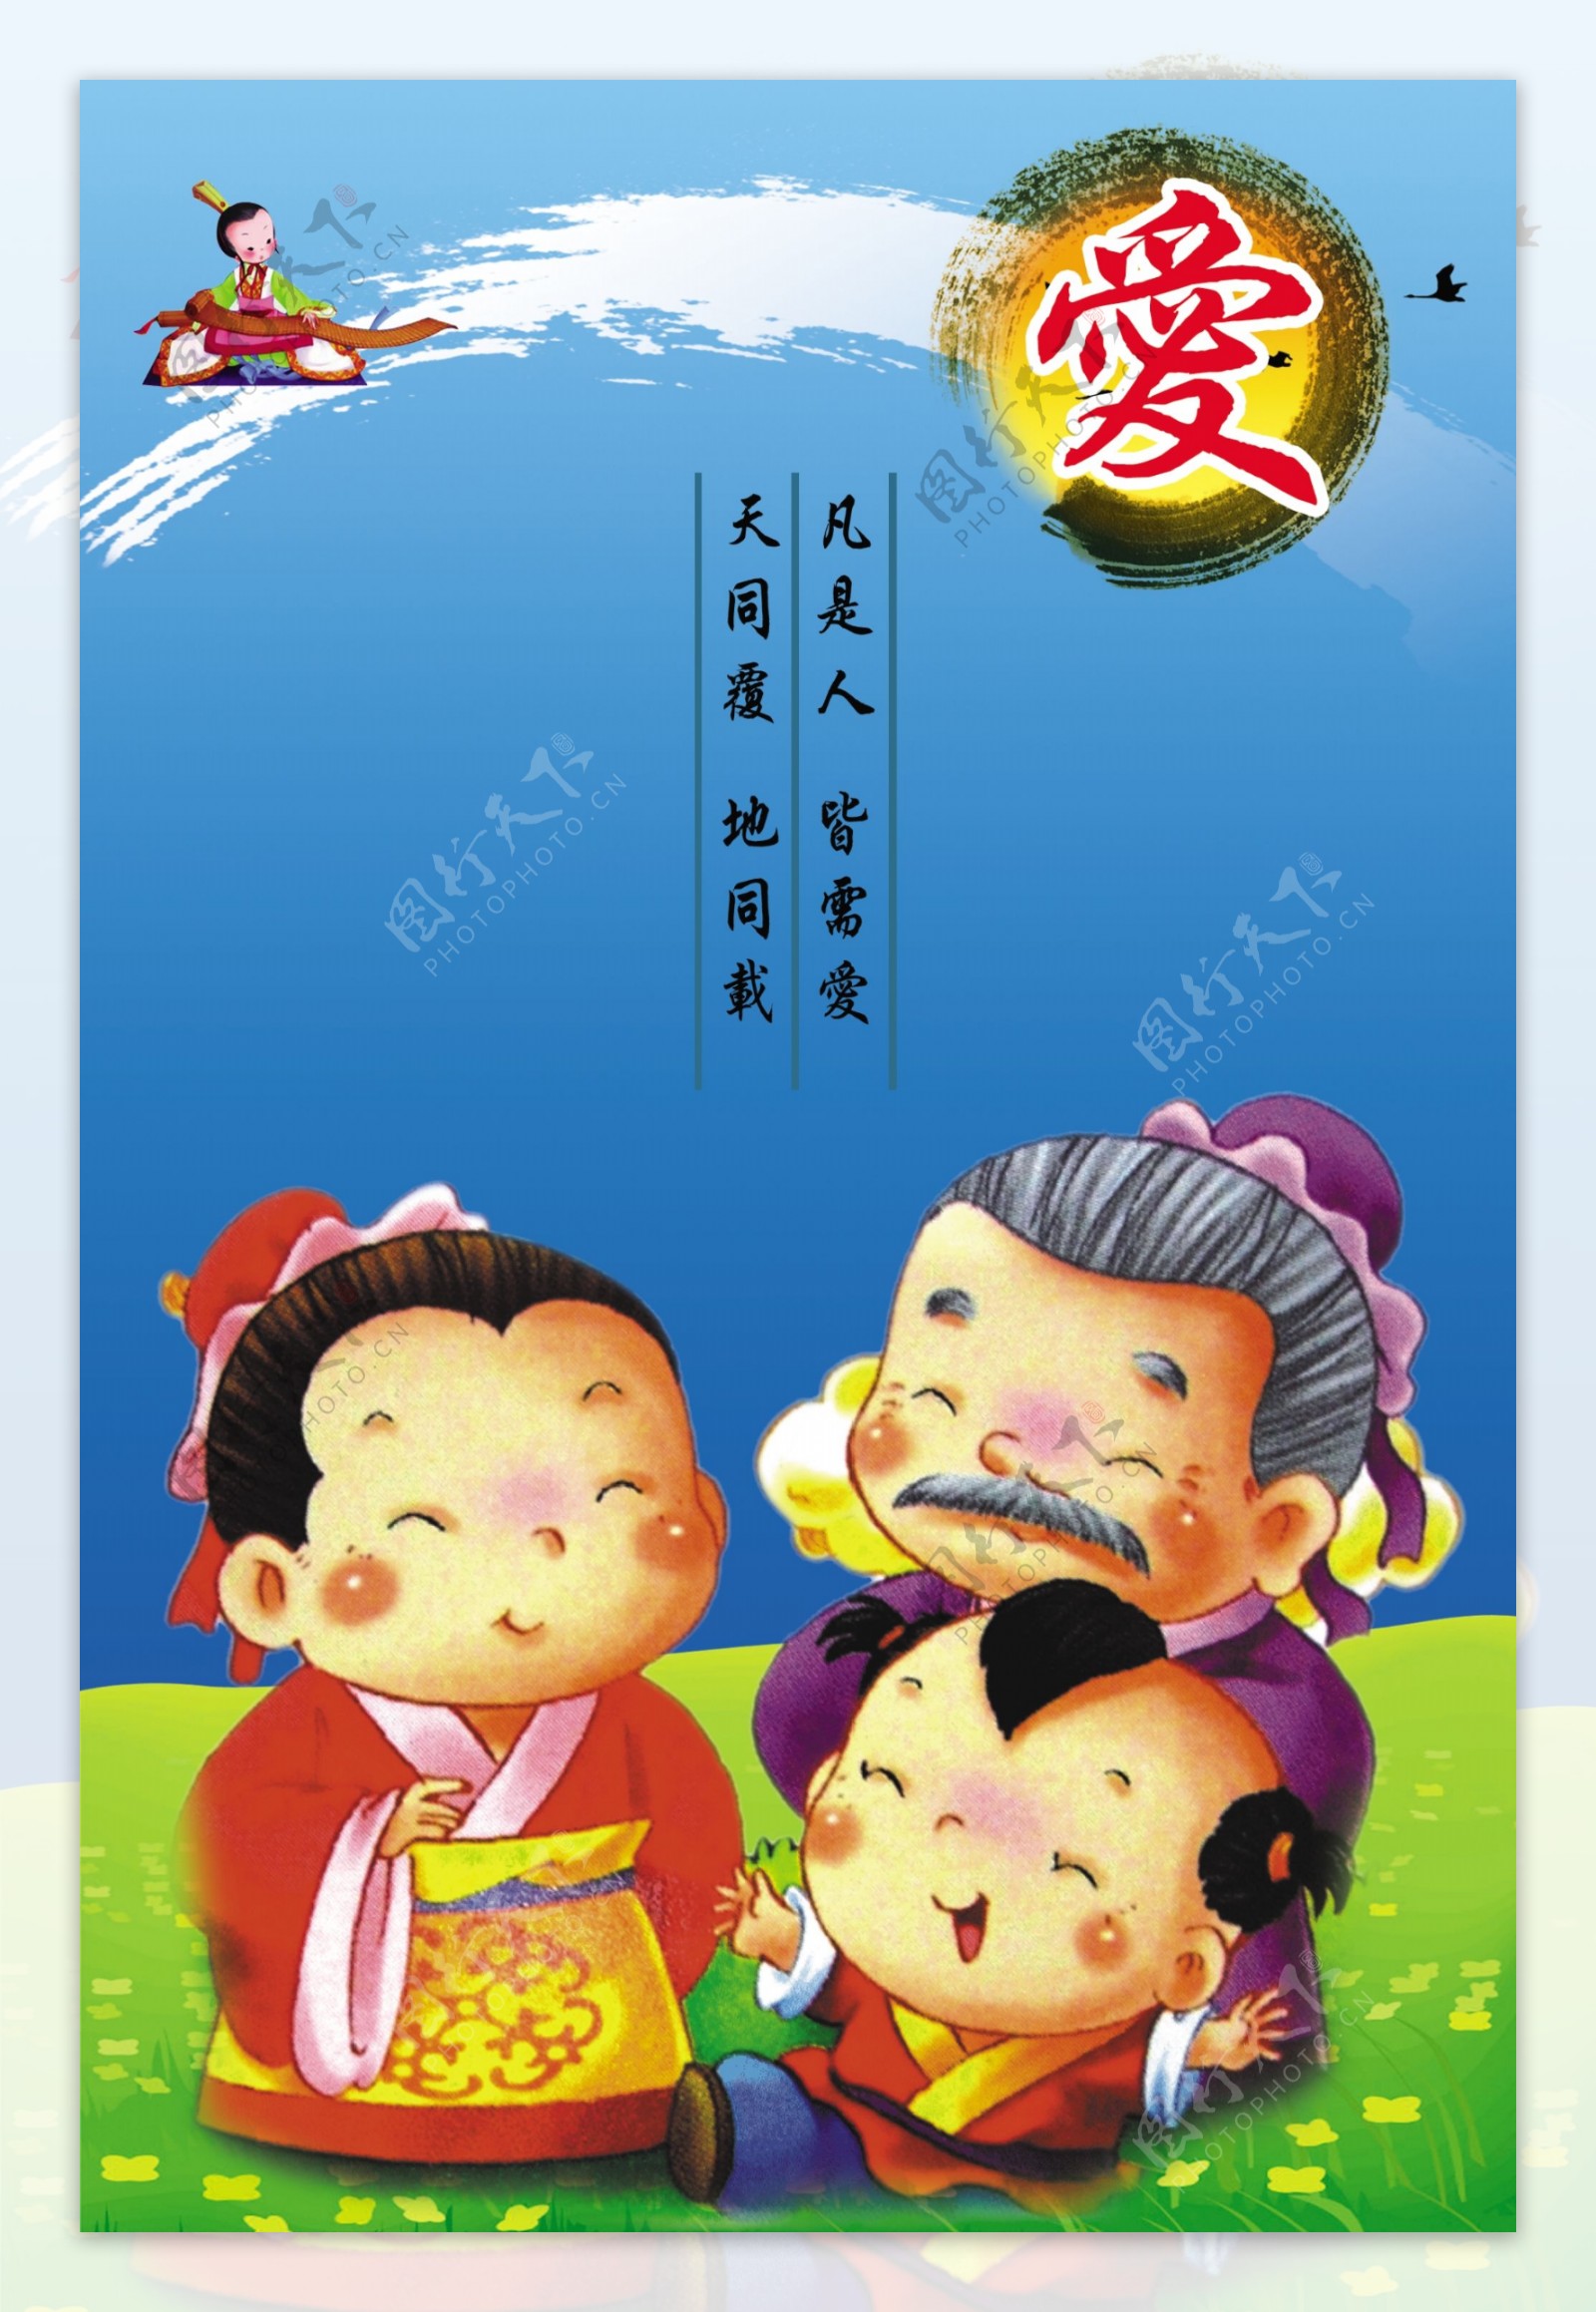 中国传统文化校园名言警句图片